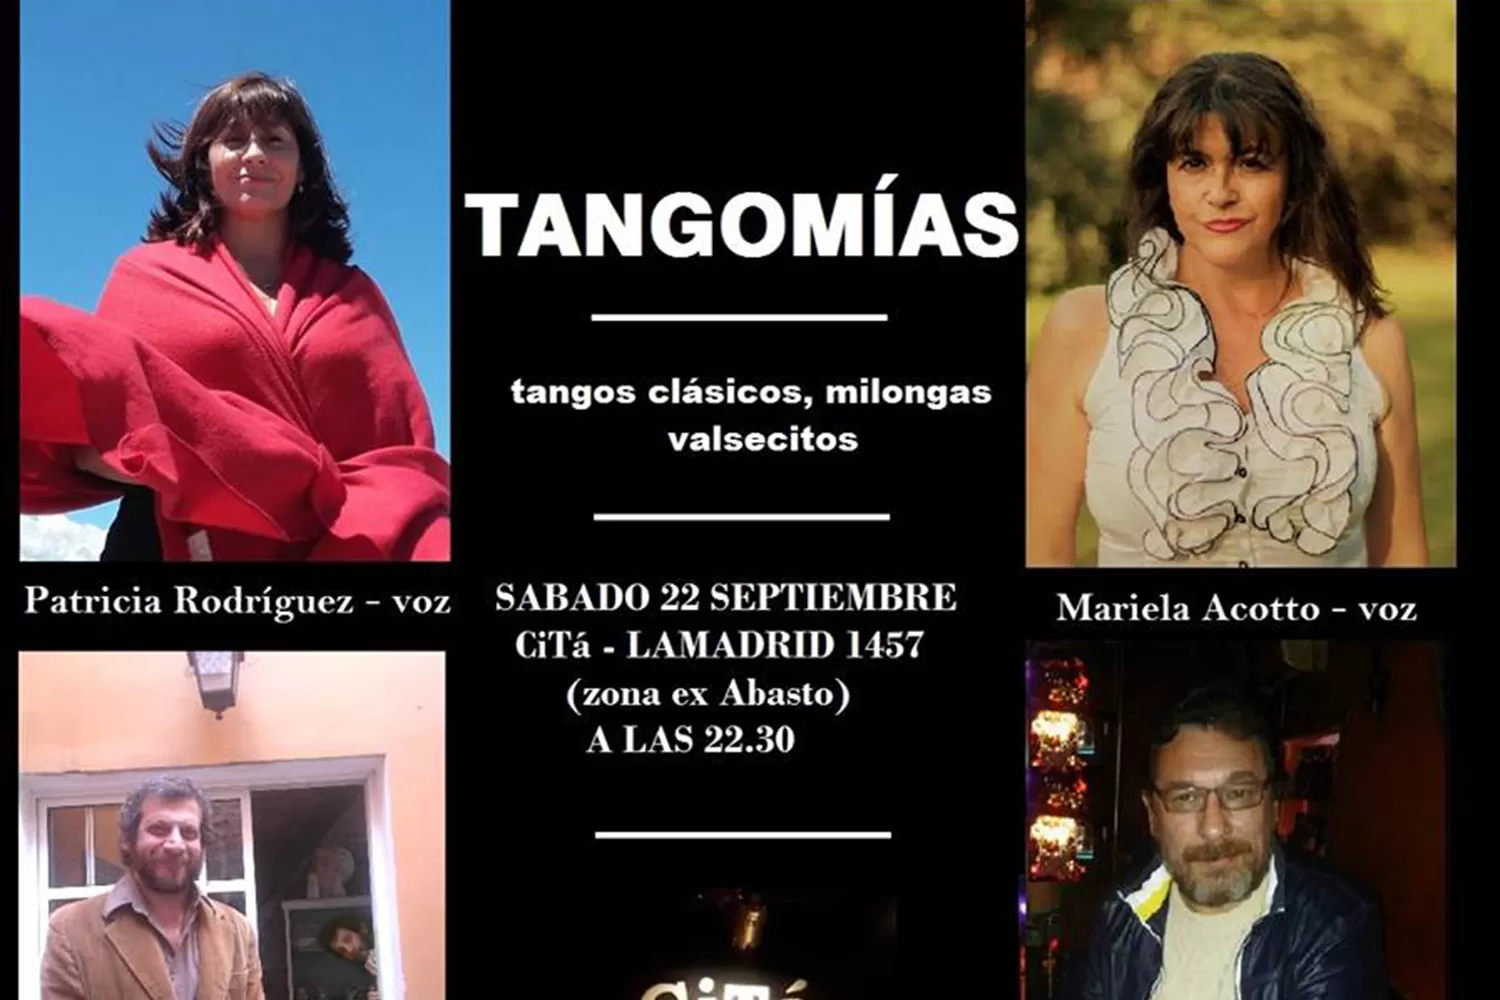 Tangomías se presentará mañana con un show de tangos, milongas y valsecitos